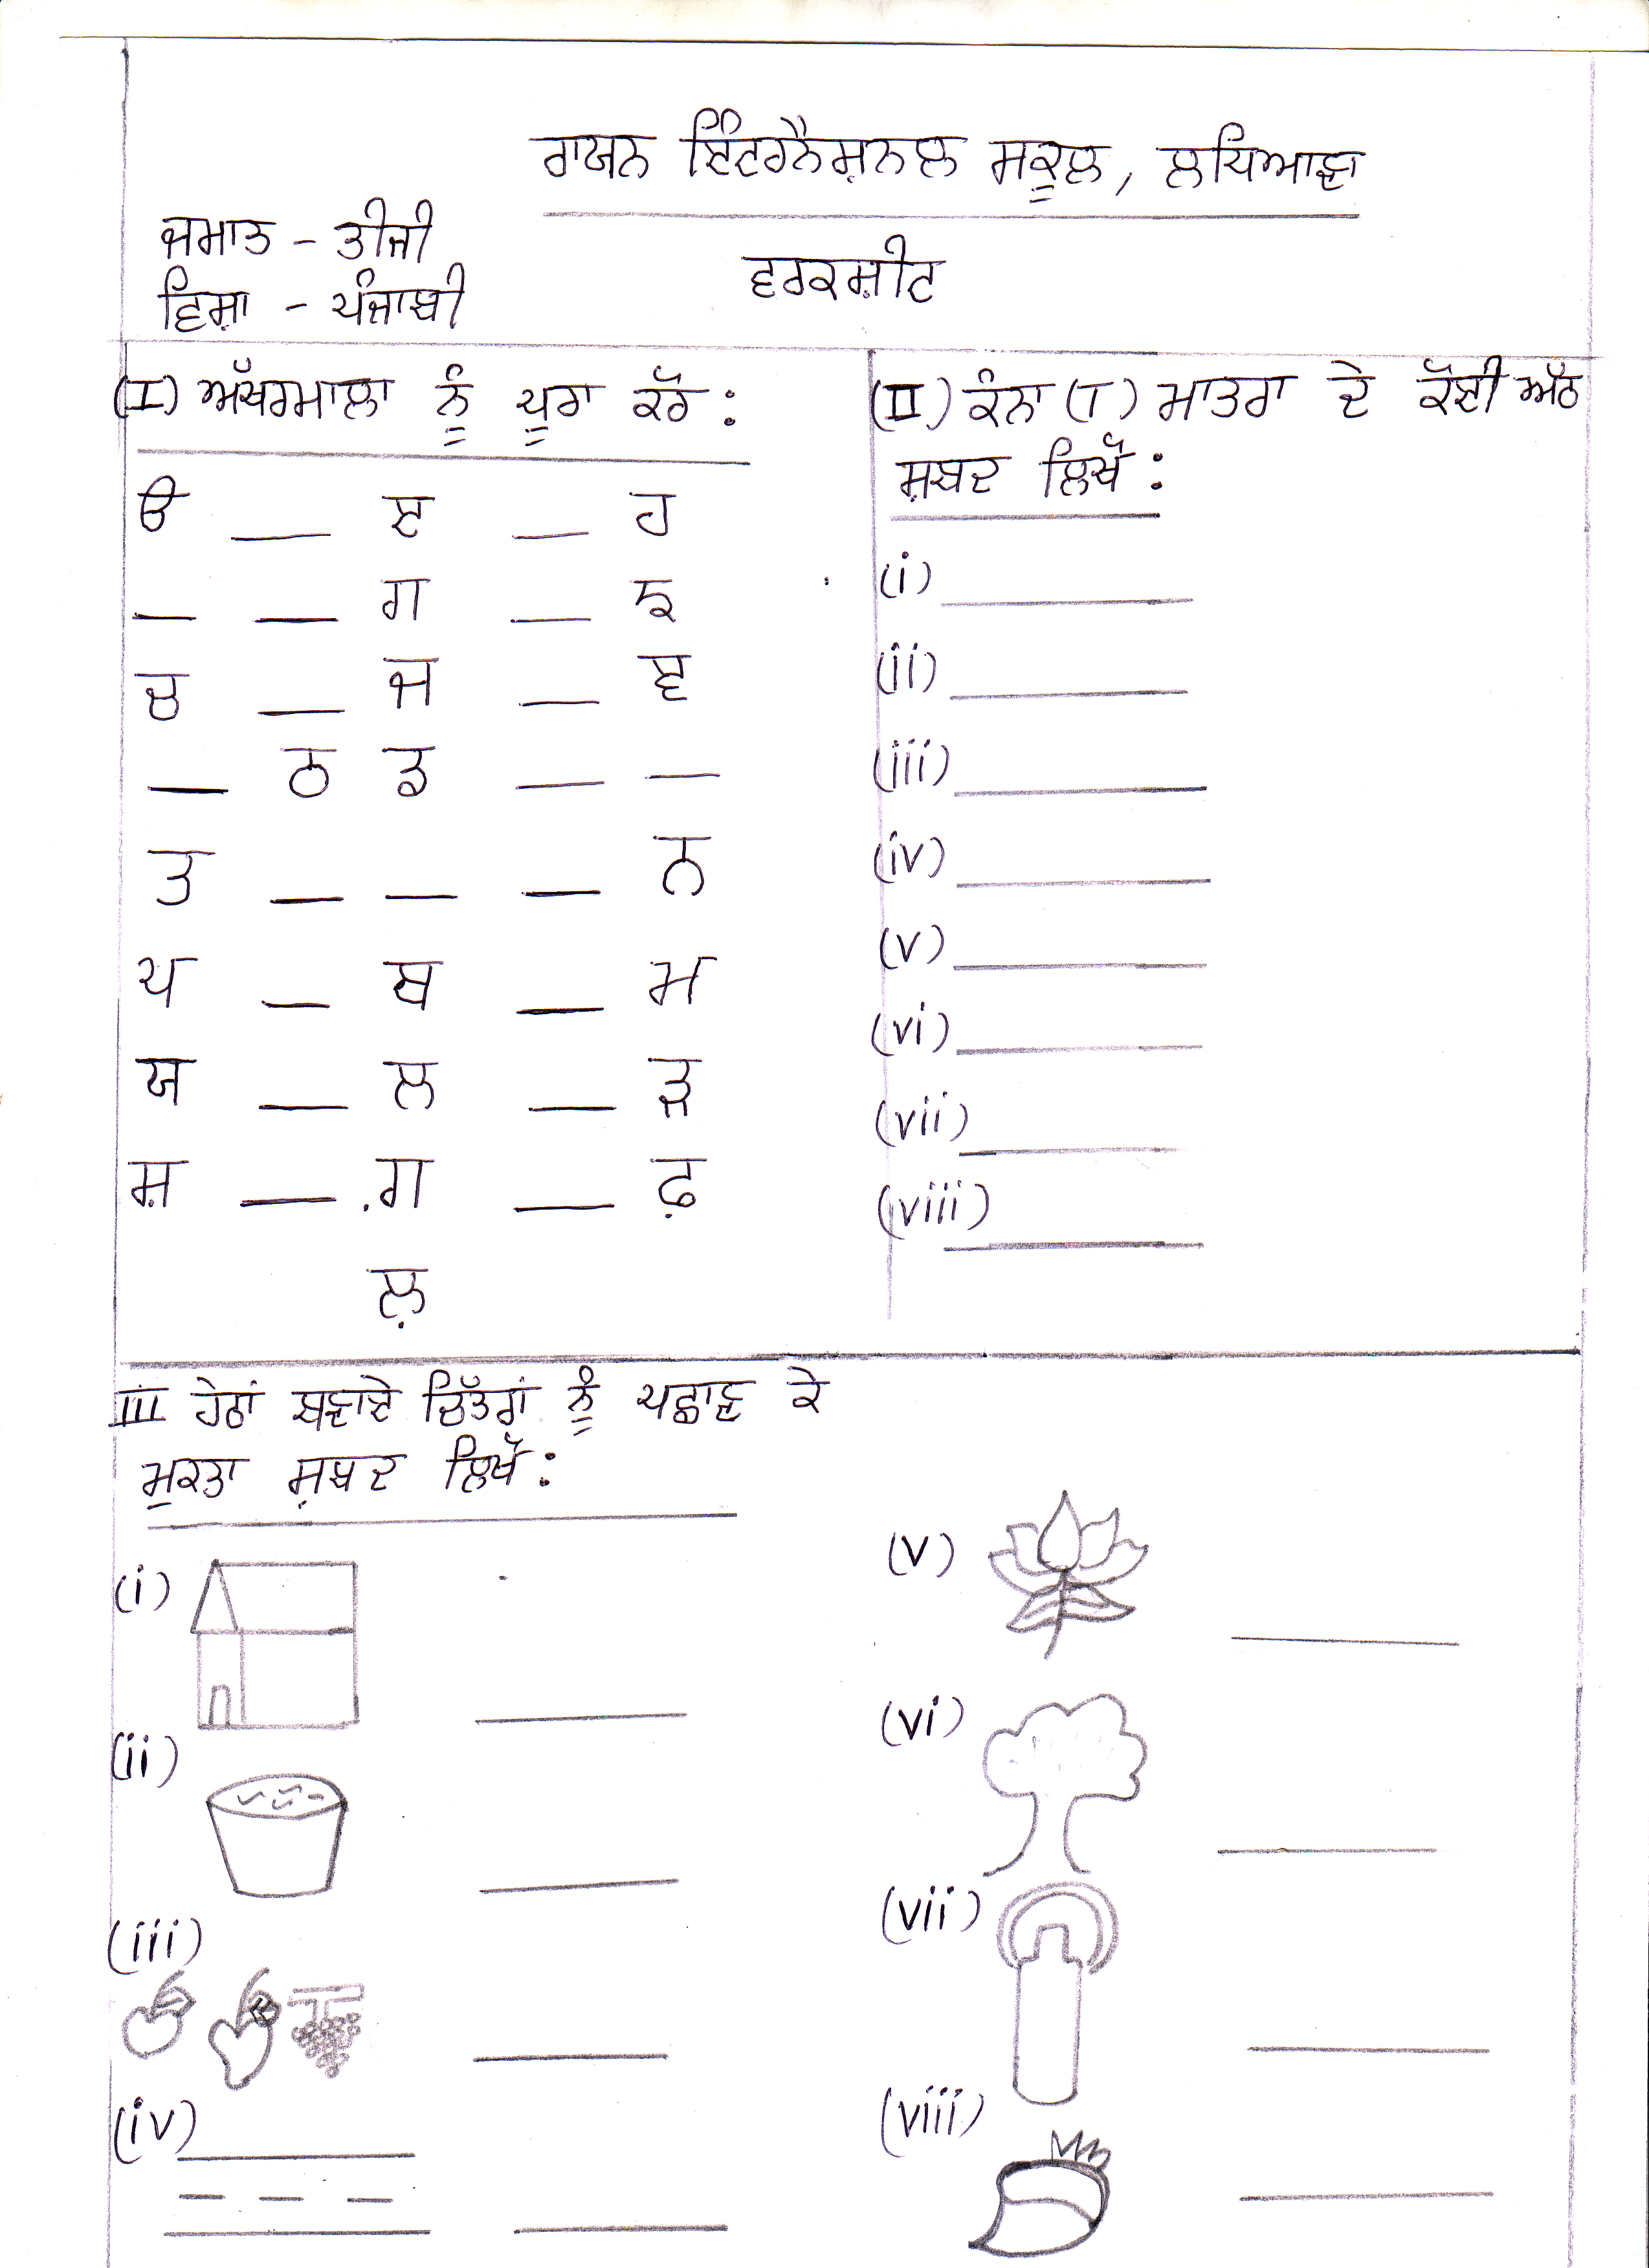 holiday homework in punjabi language